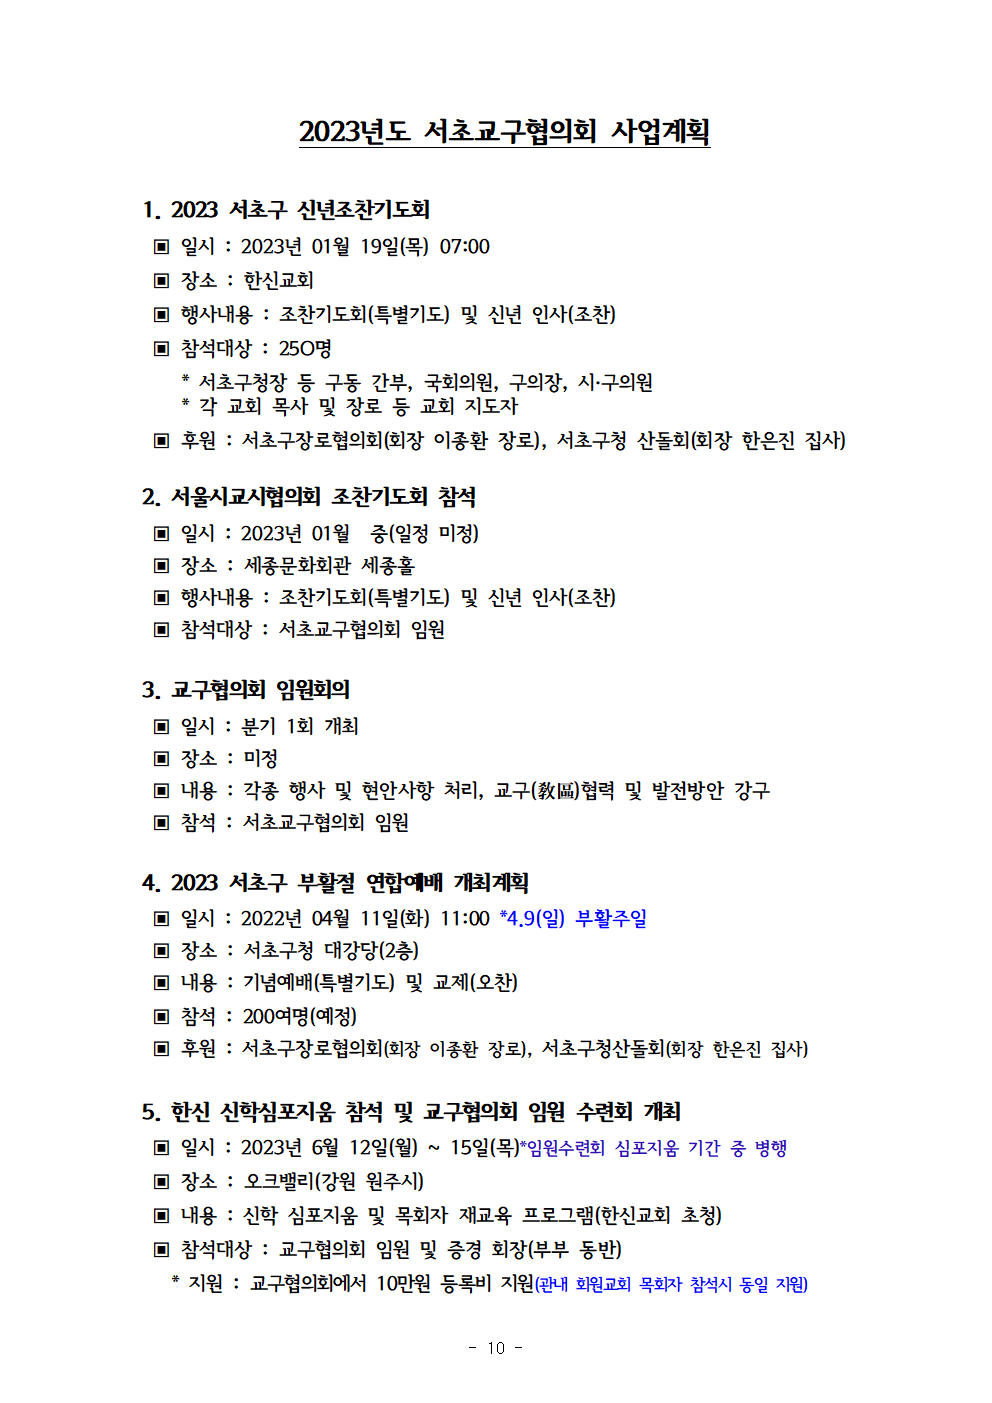 2022회기 서초교구협의회 정기총회자료(12.13.)_홈페이지011.png